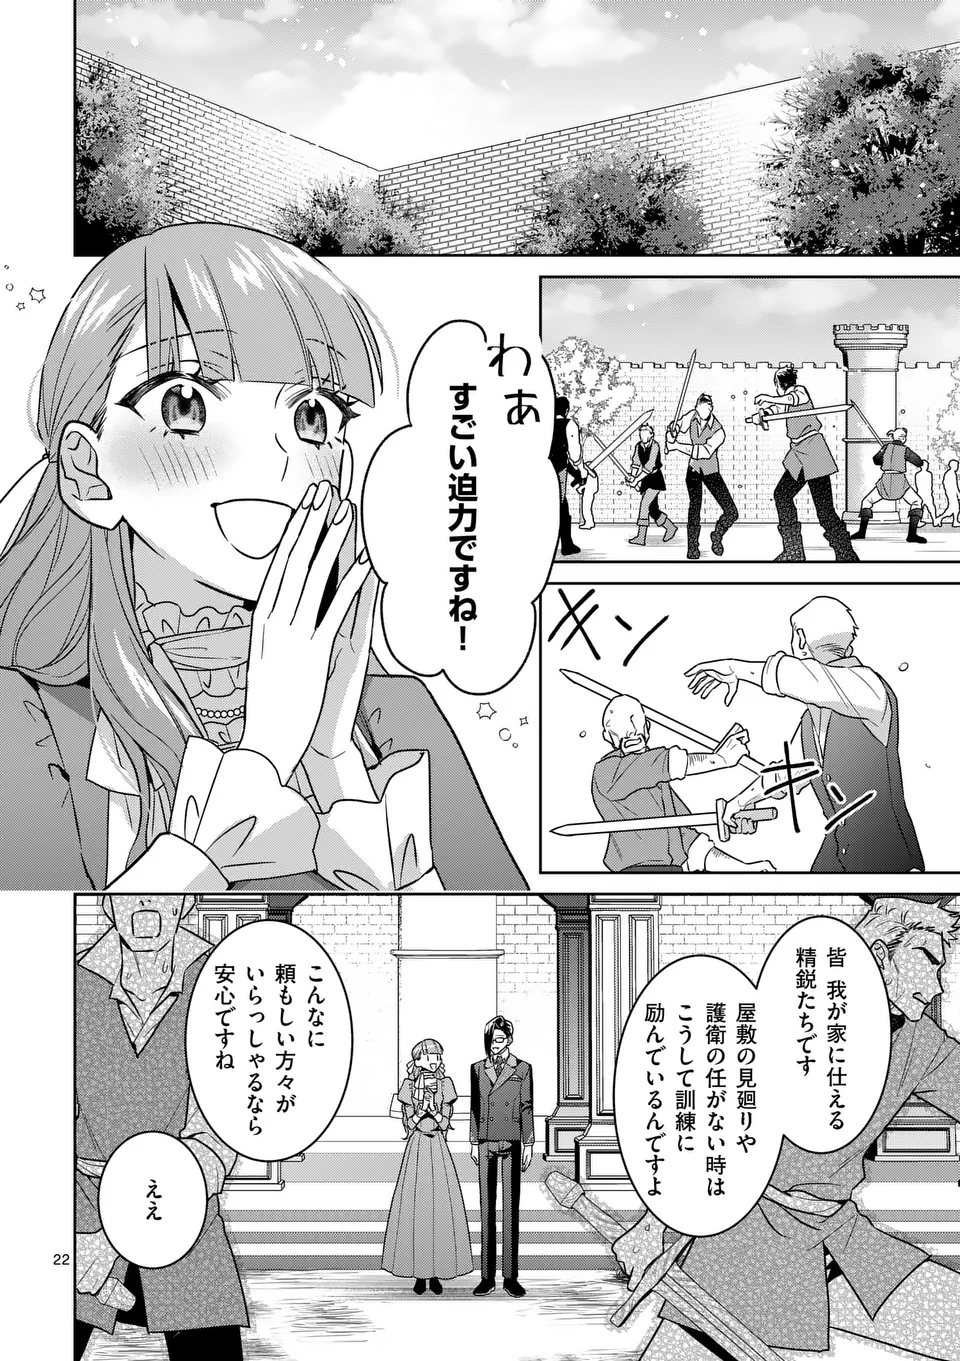 Nisemono Reijou no Fukushuu – Adauchi no Tame, 5-nin no Koushaku Reisoku no Konyakusha ni narimasu - Chapter 3.2 - Page 9